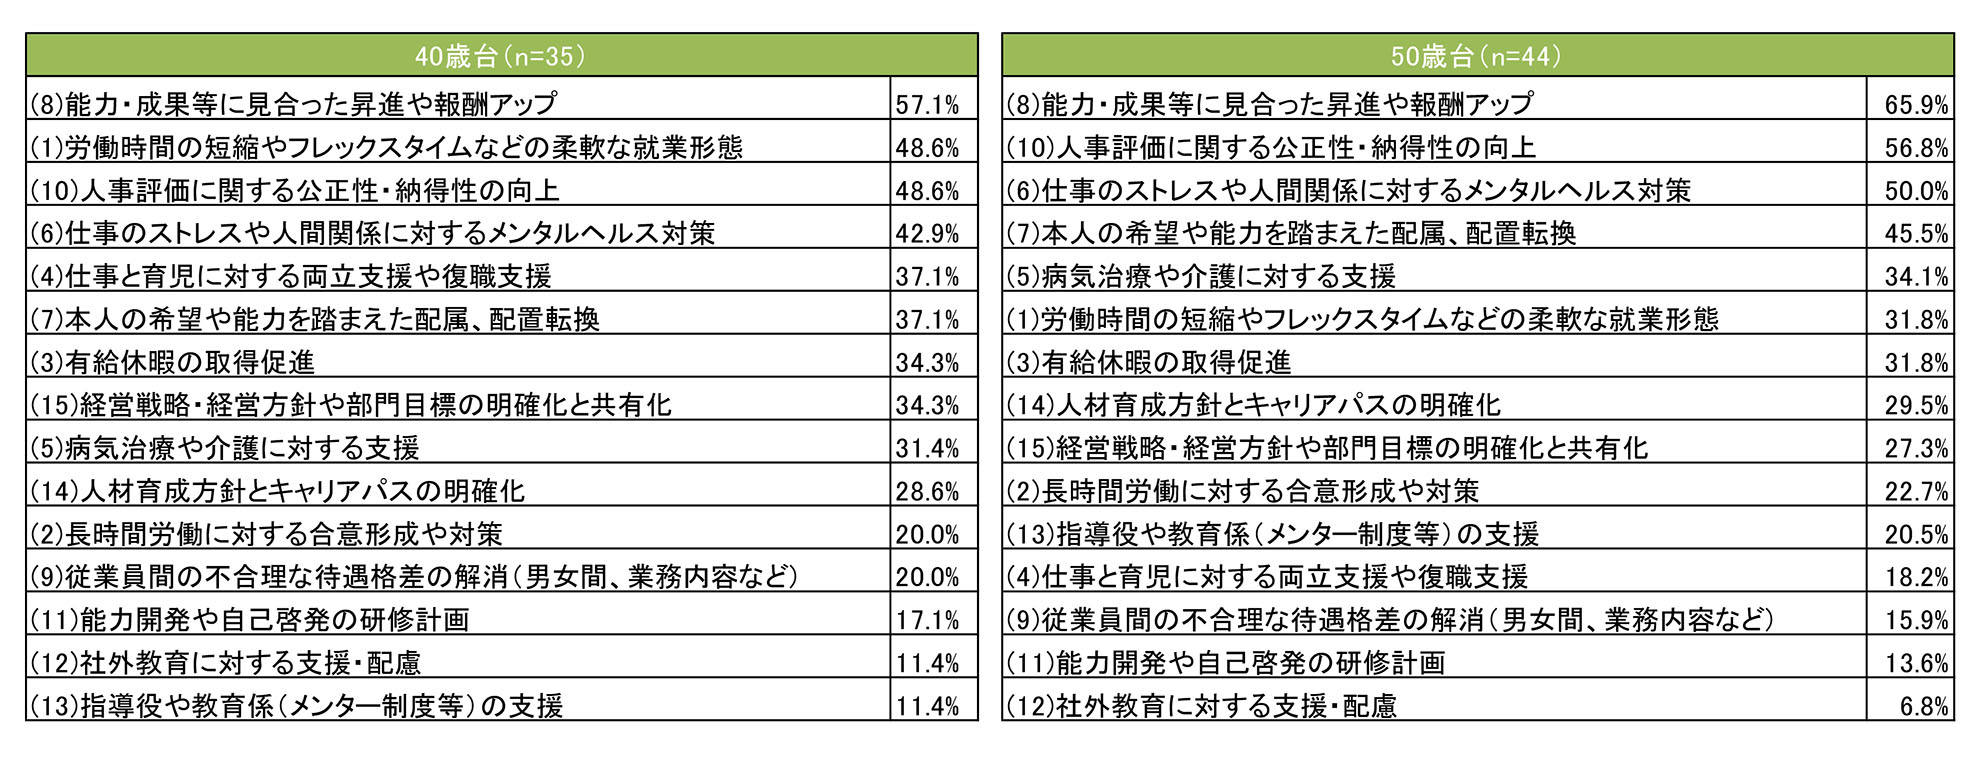 熊本県｜就業管理・人事管理、評価・報酬、人材育成に関する重要だと思う取り組み（40～50歳台）